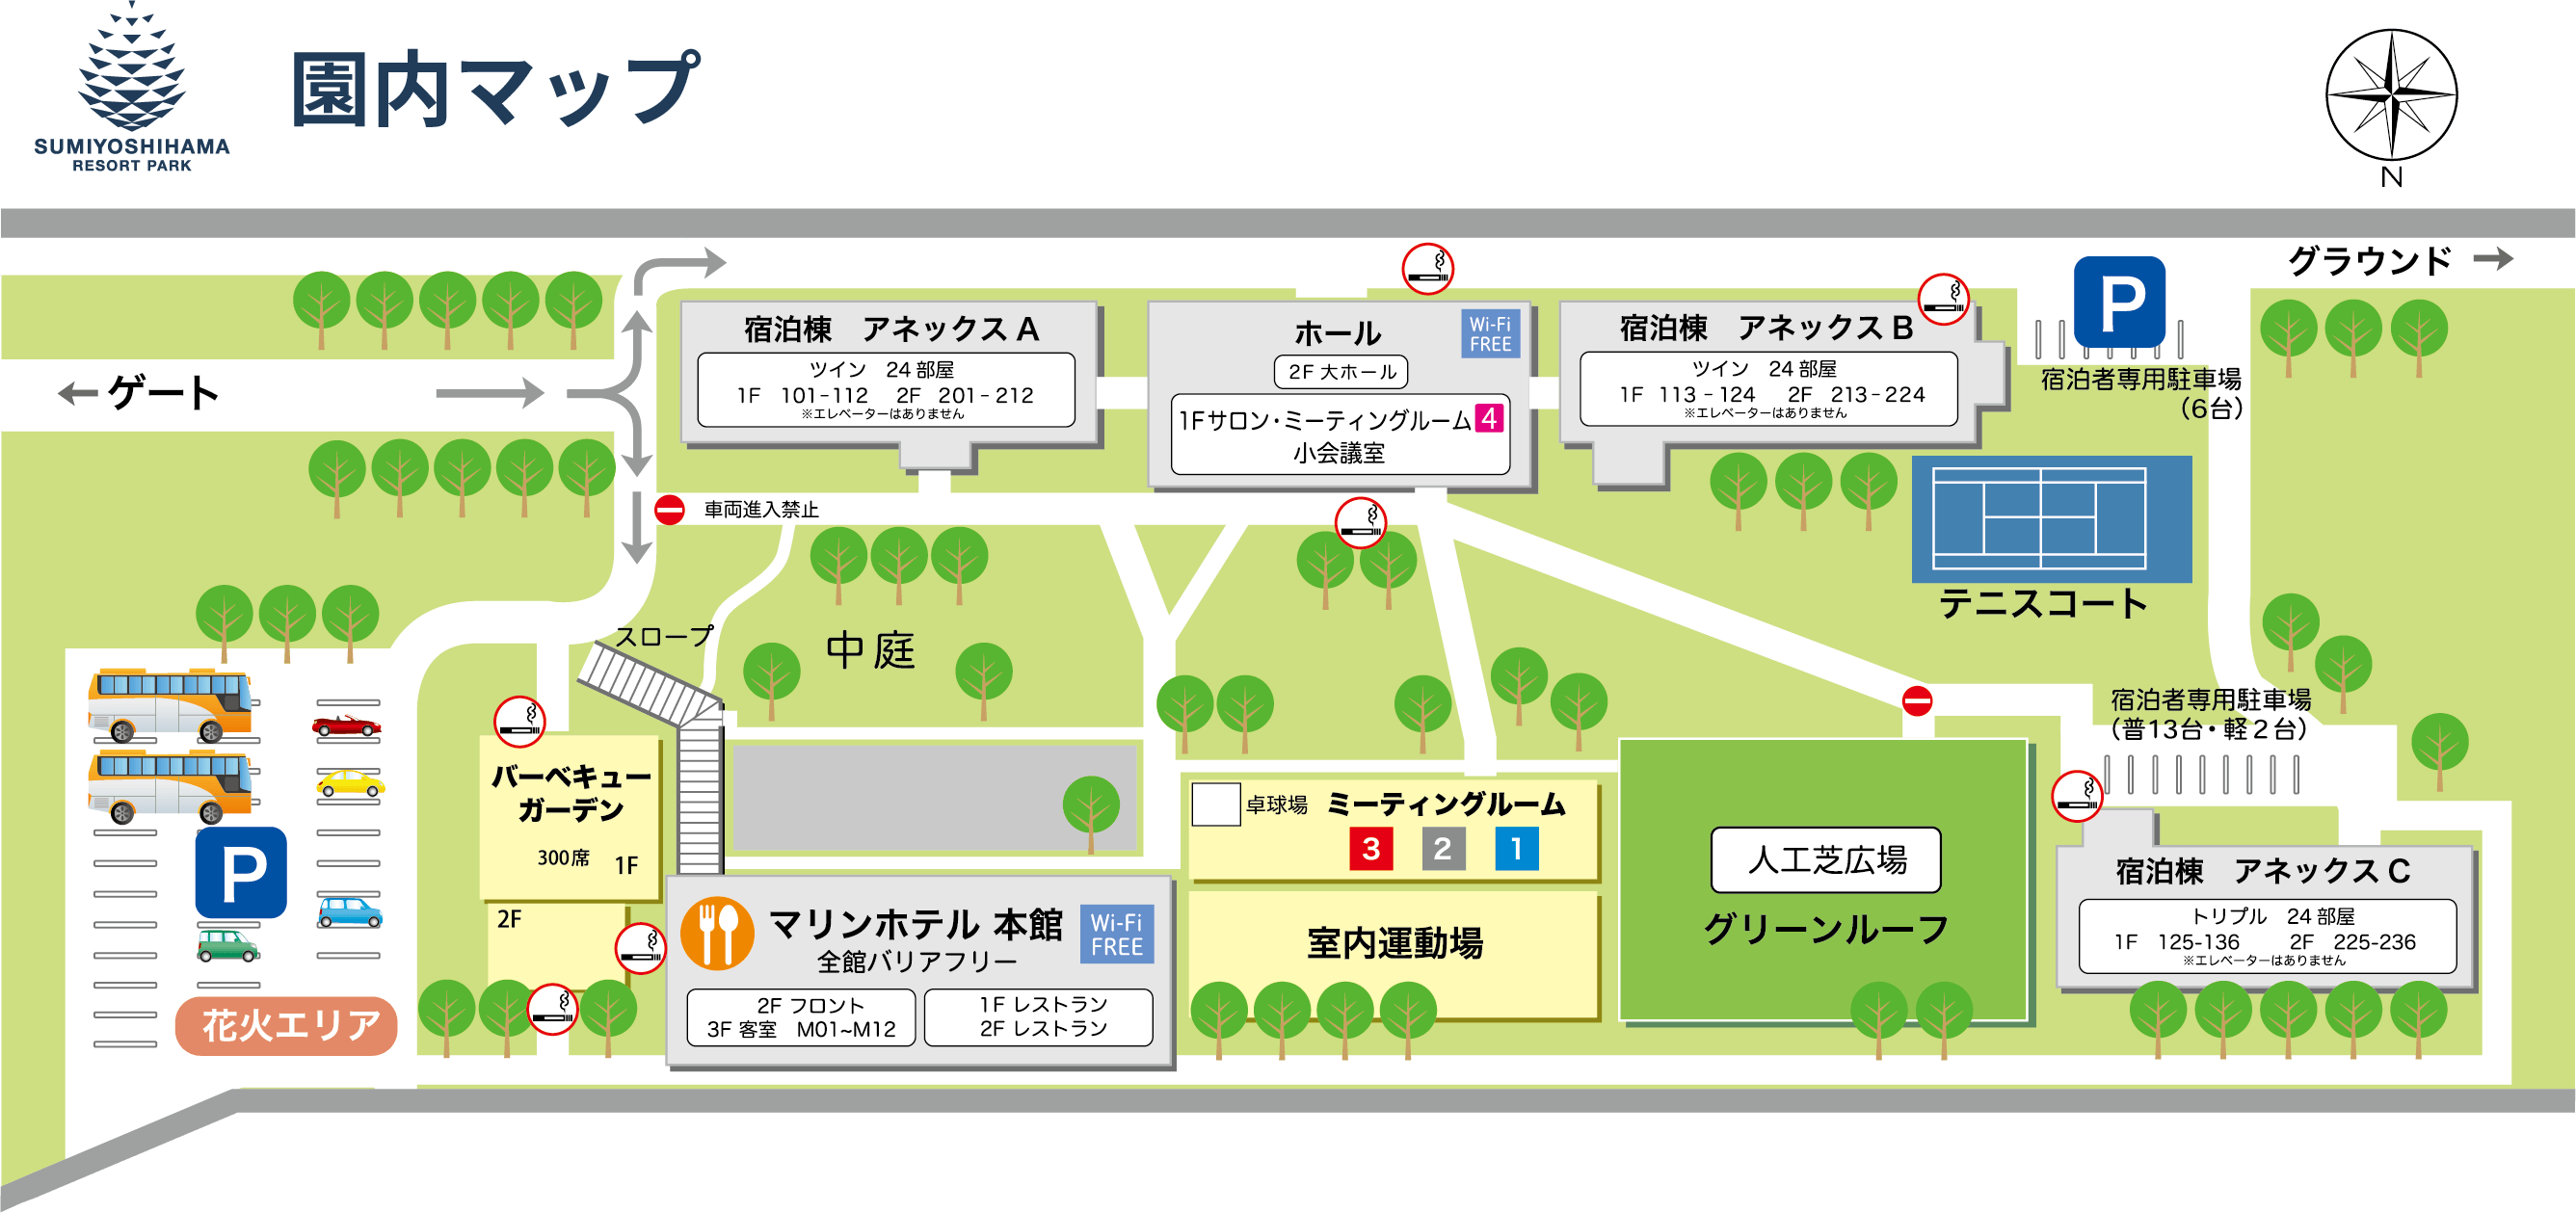 住吉浜リゾートパーク園内マップ